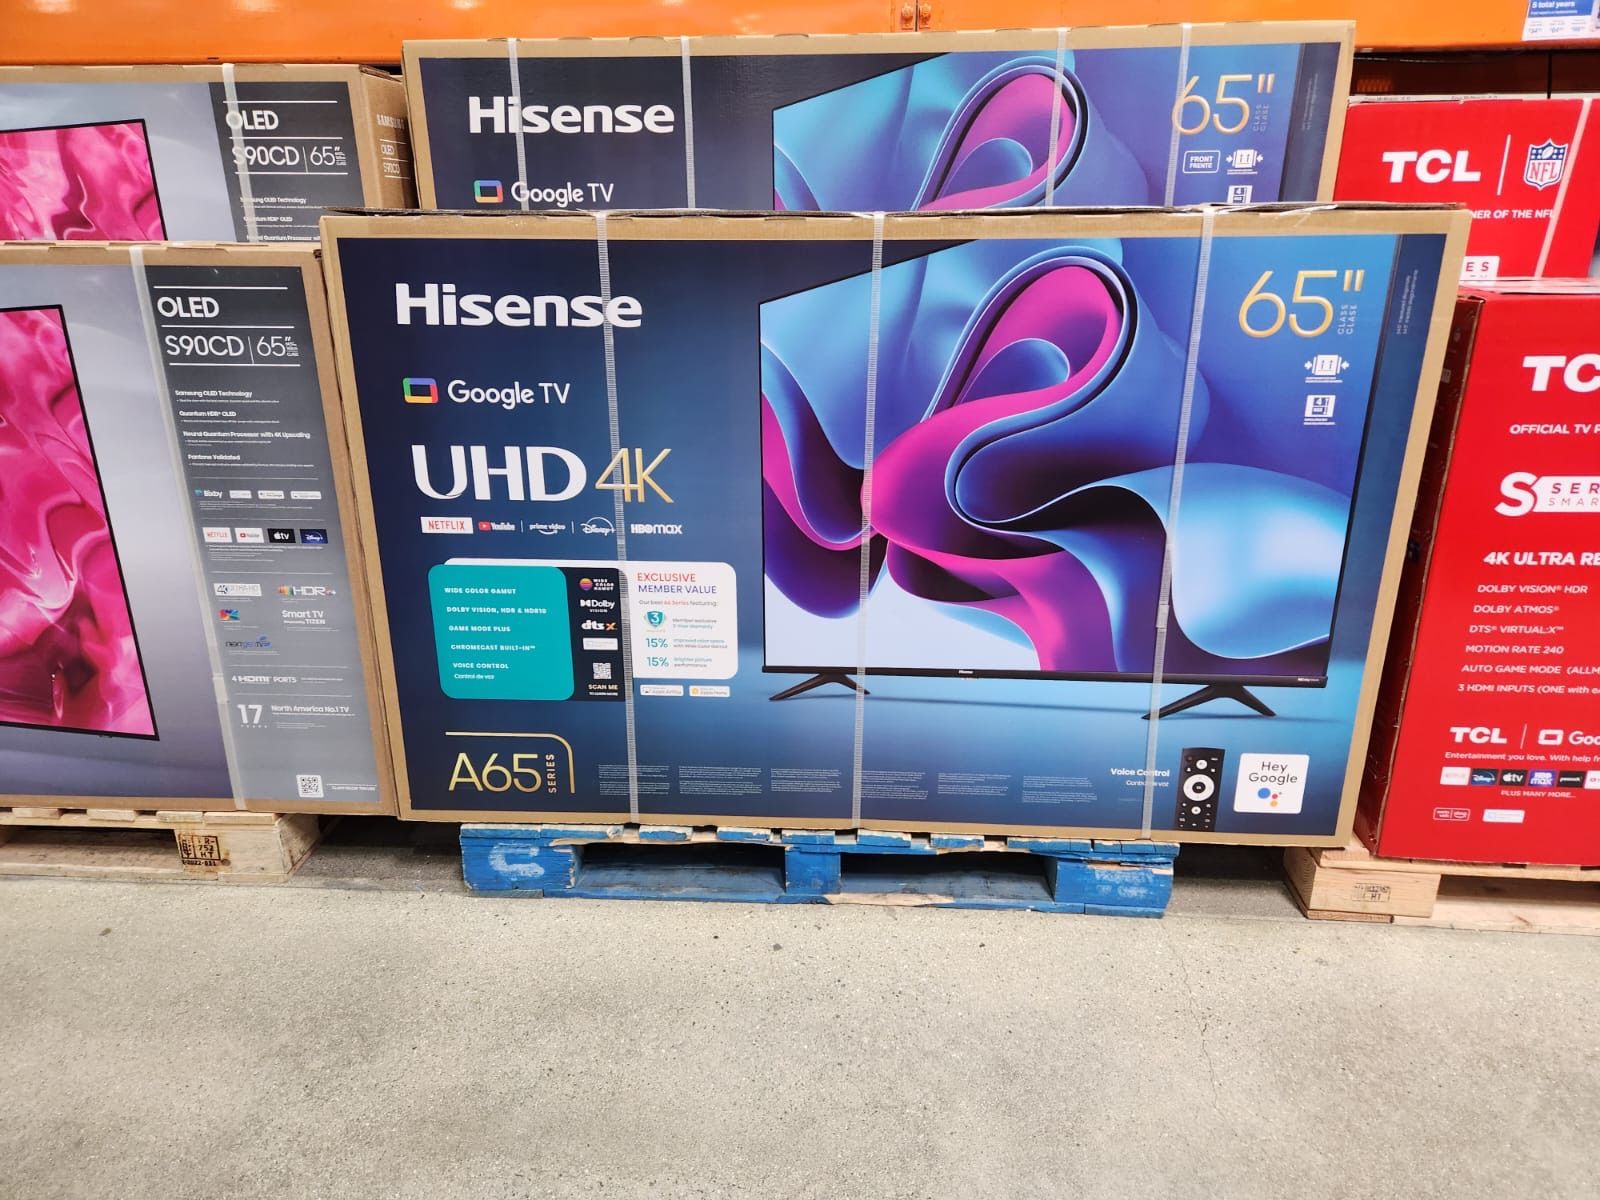 65”Hisense UHD 4K SMART TV